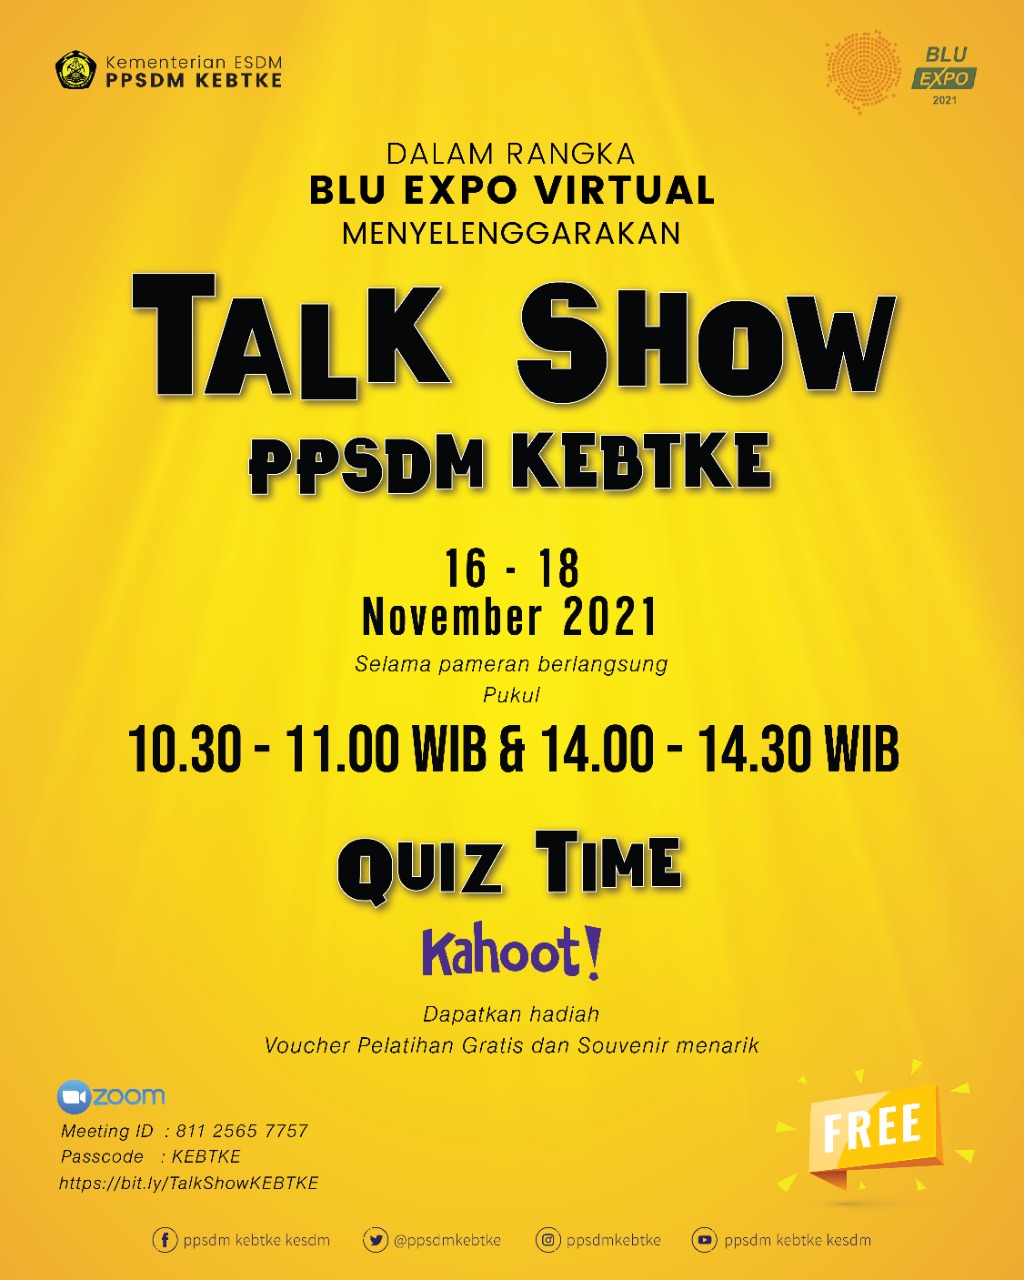 Dalam Rangka Blu Expo Virtual Menyelenggarakan Talk Show PPSDM KEBTKE